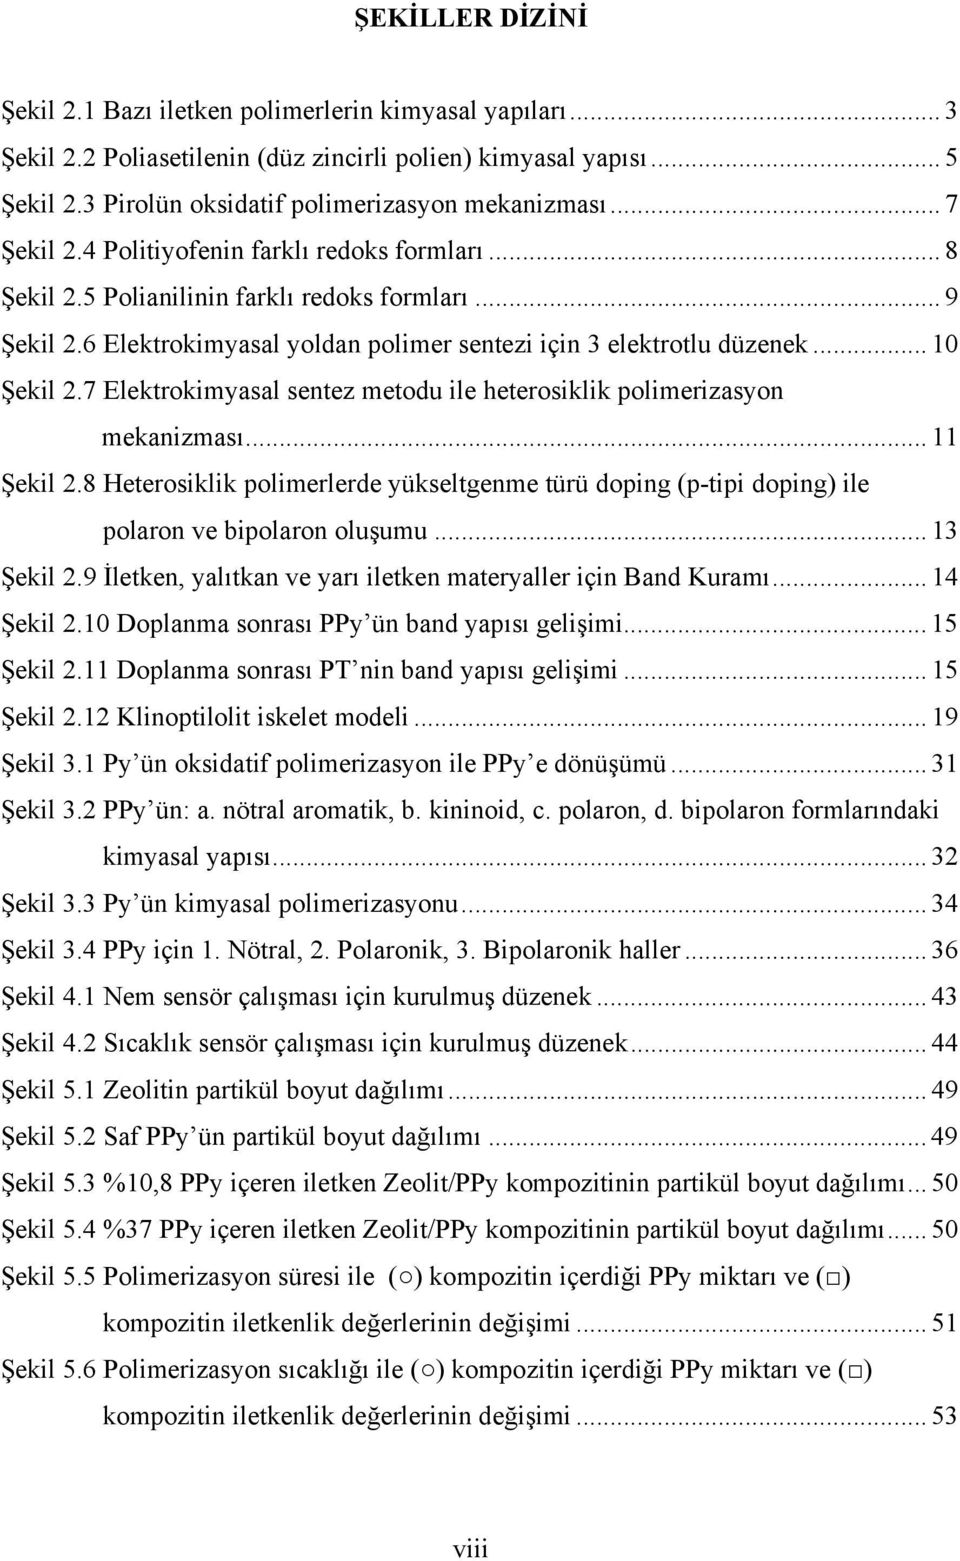 7 Elektrokimyasal sentez metodu ile heterosiklik polimerizasyon mekanizması... 11 Şekil 2.8 Heterosiklik polimerlerde yükseltgenme türü doping (p-tipi doping) ile polaron ve bipolaron oluşumu.